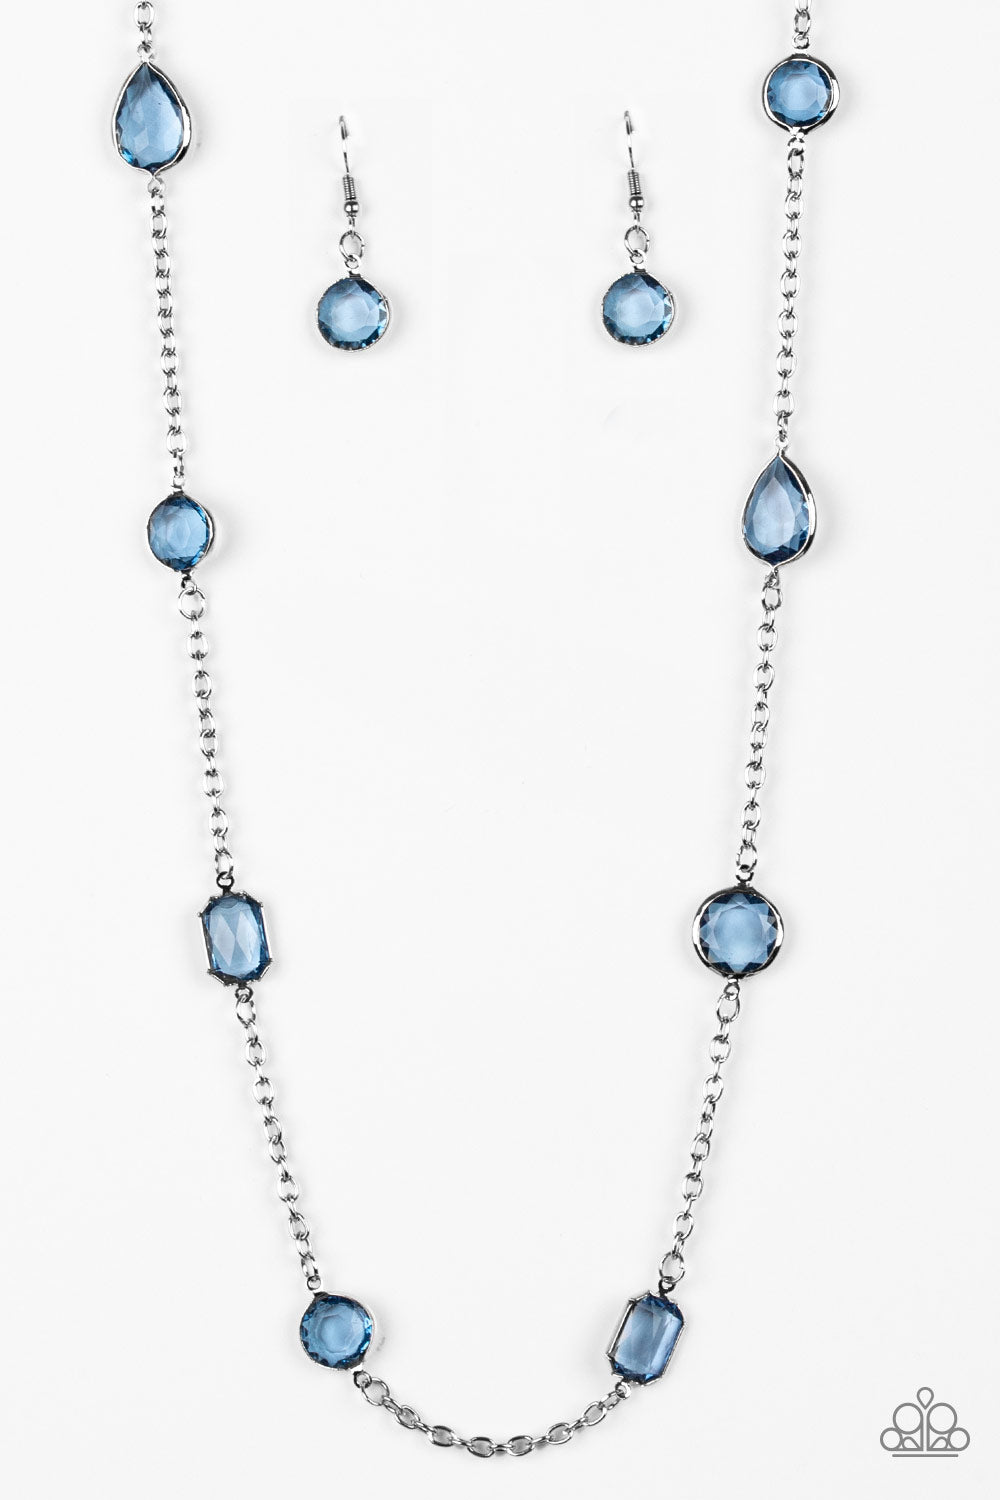 Paparazzi Necklace ~ Glassy Glamorous - Blue